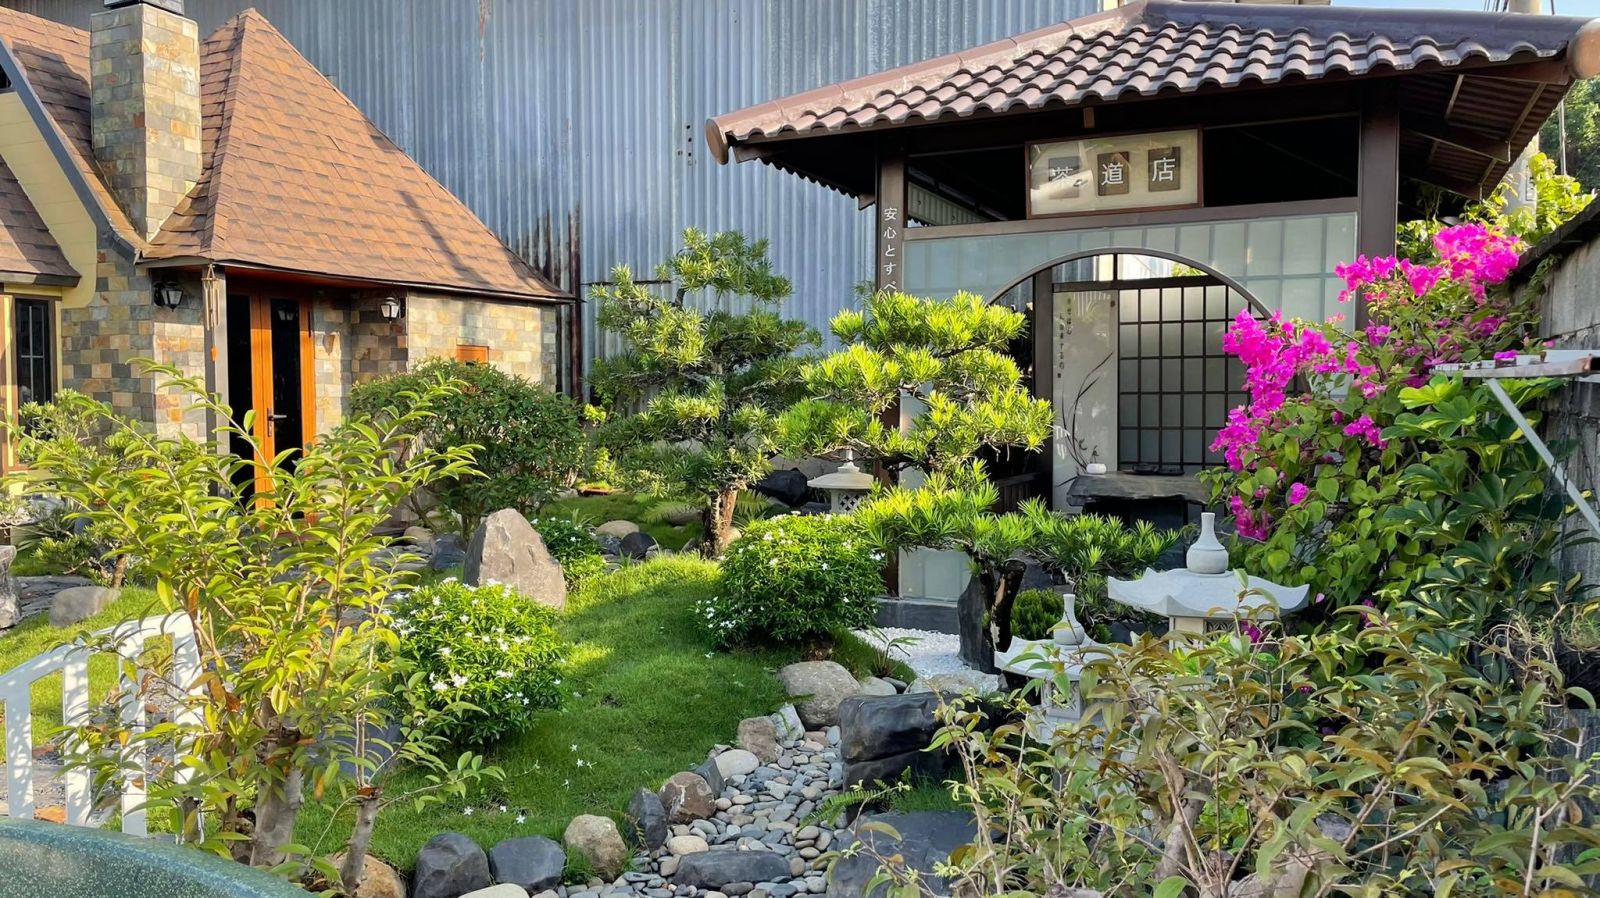 Chòi nghỉ sân vườn phong cách Nhật Bản